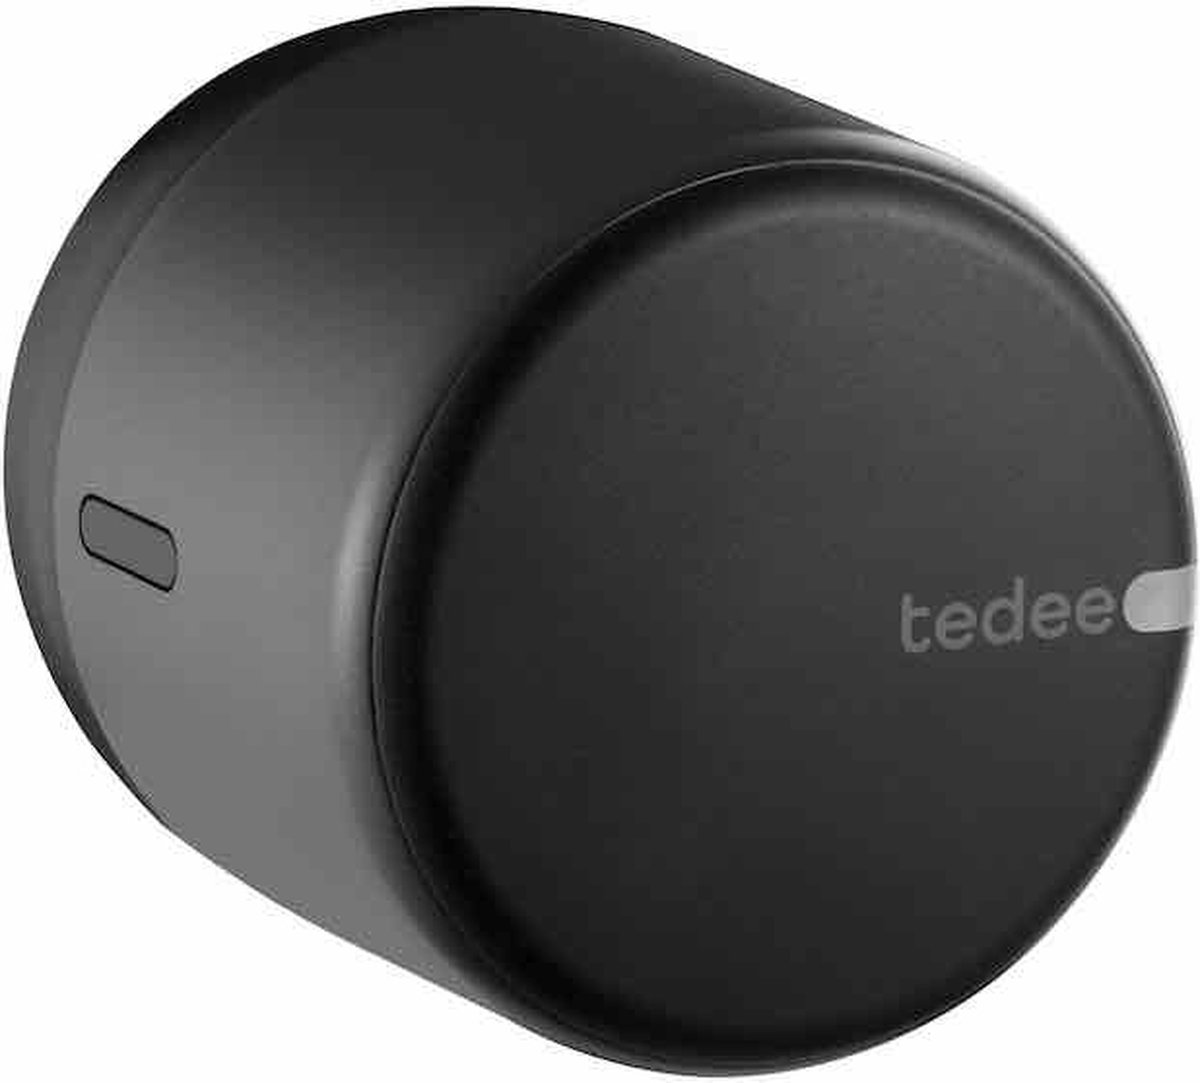 NEW Tedee GO Smartlock - Graphite - Monteer over je huidige sleutel - Bluetooth - Tedee